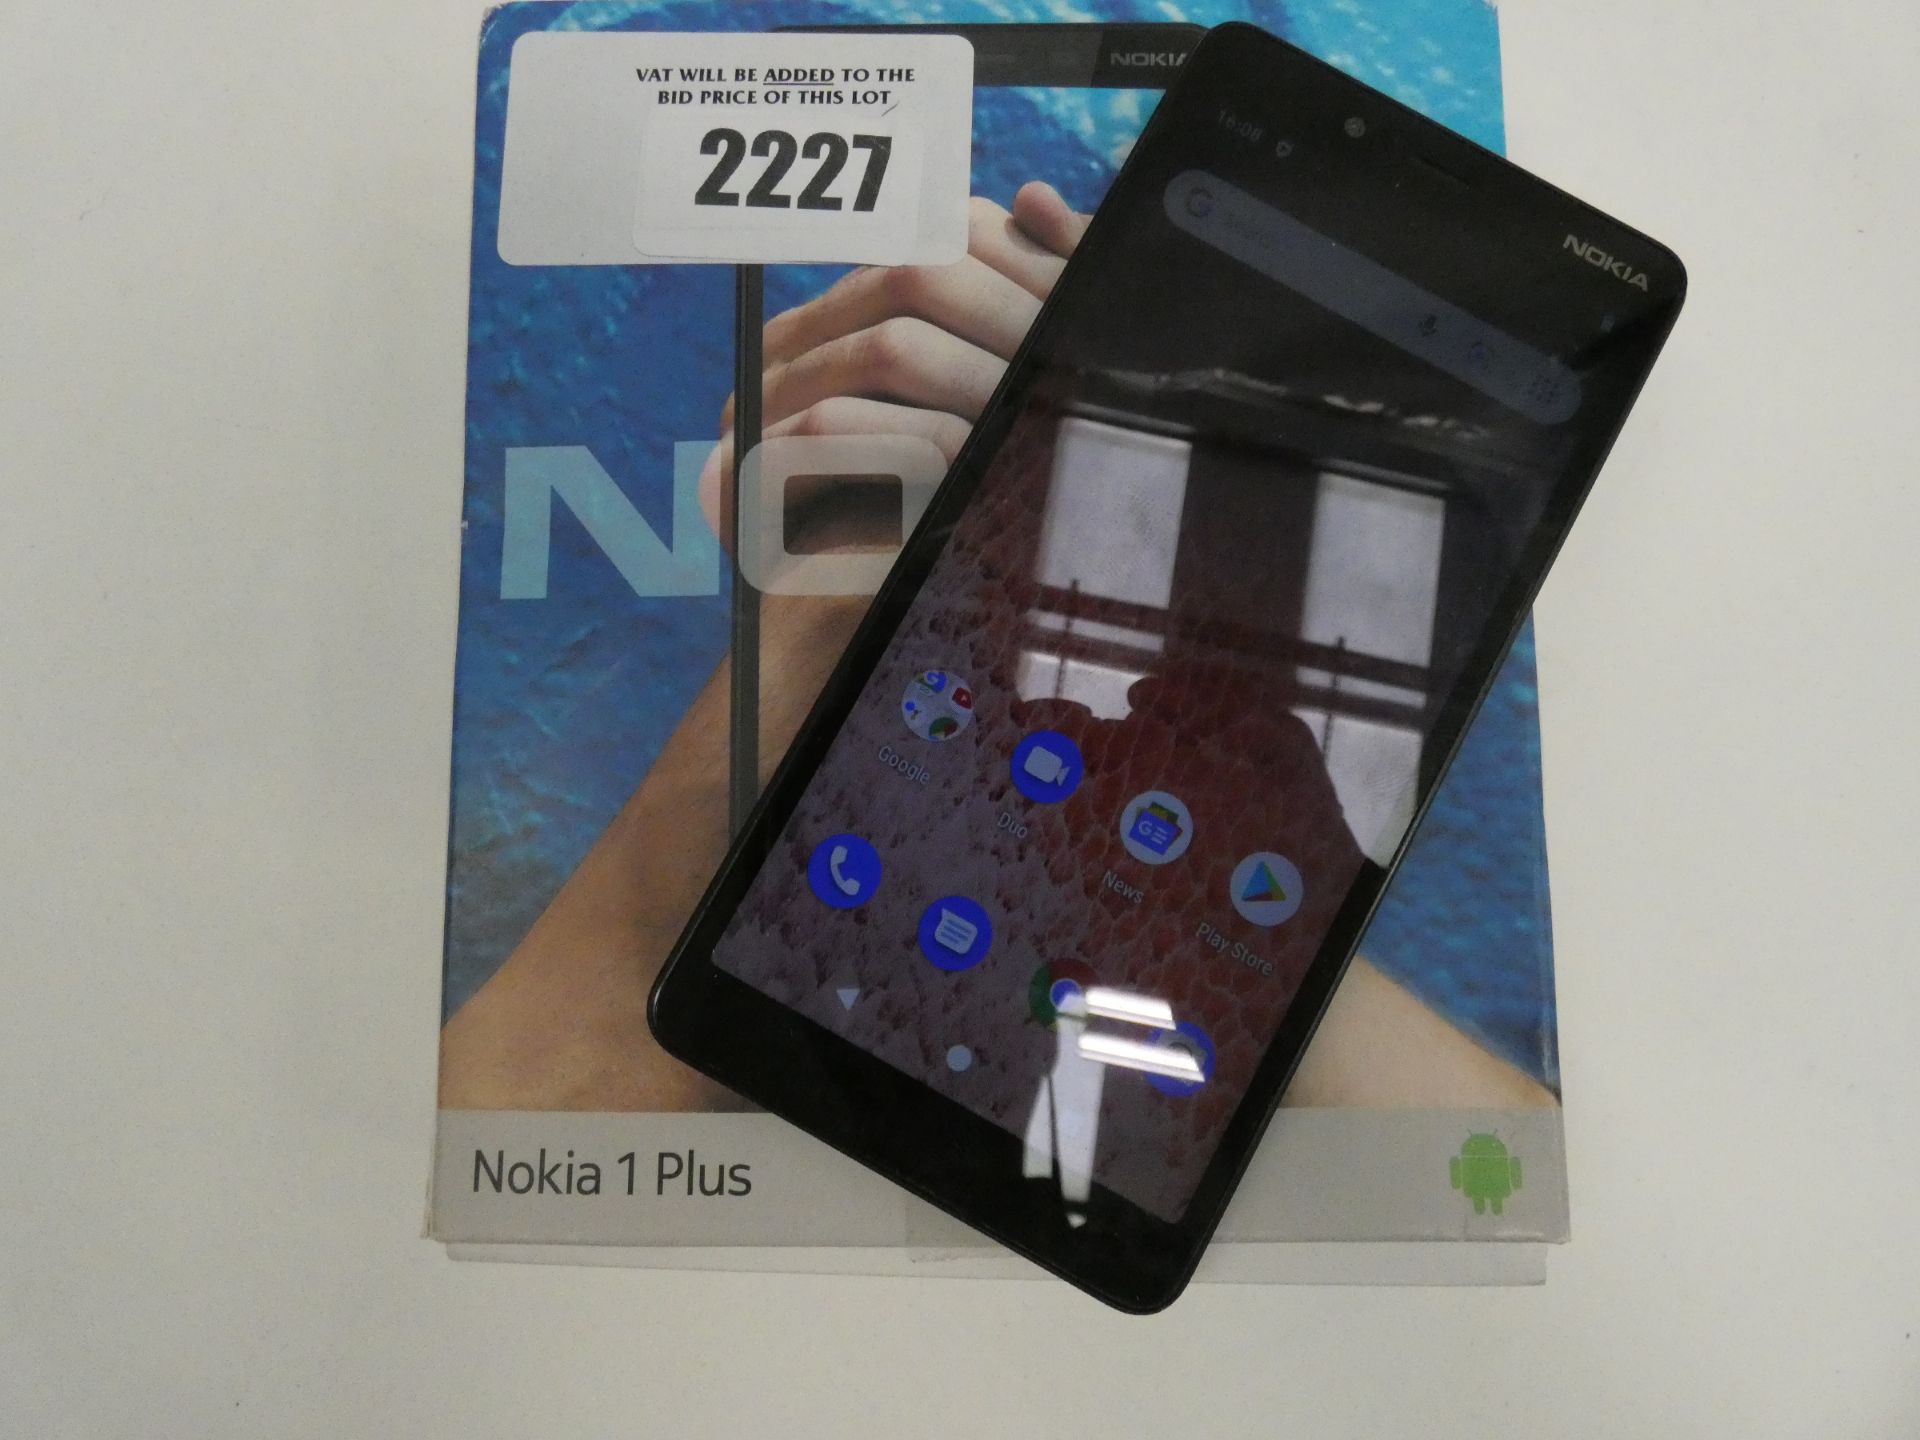 Nokia 1 plus smartphone in box